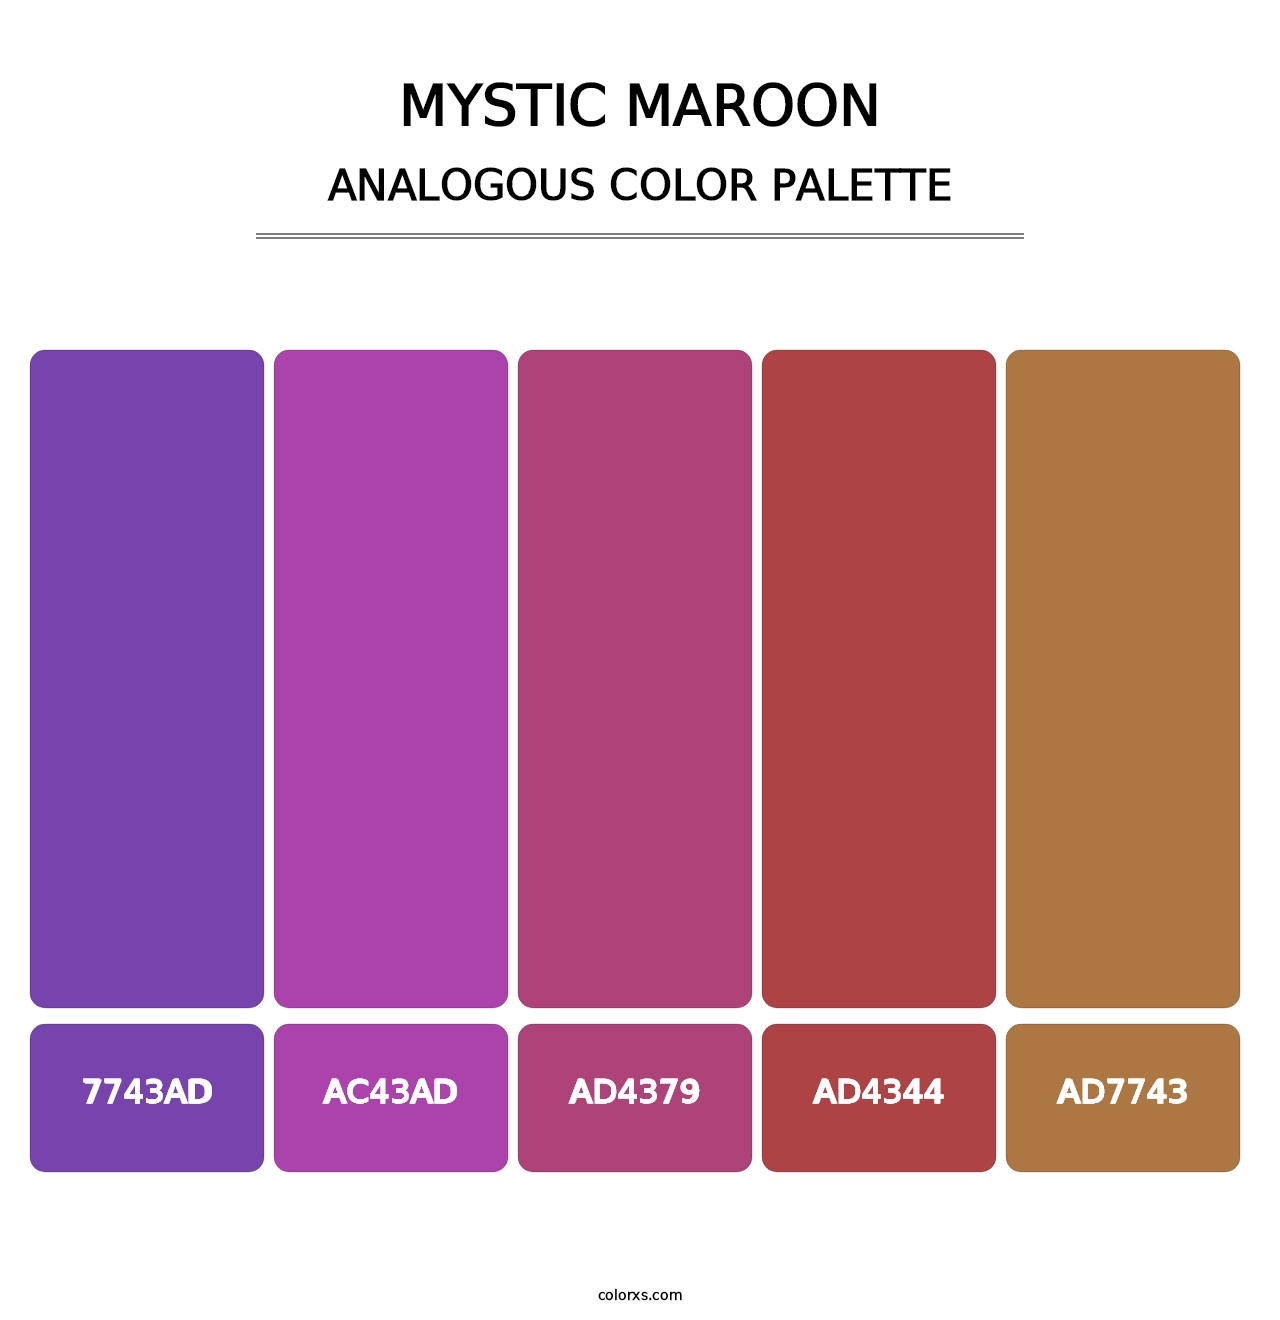 Mystic Maroon - Analogous Color Palette